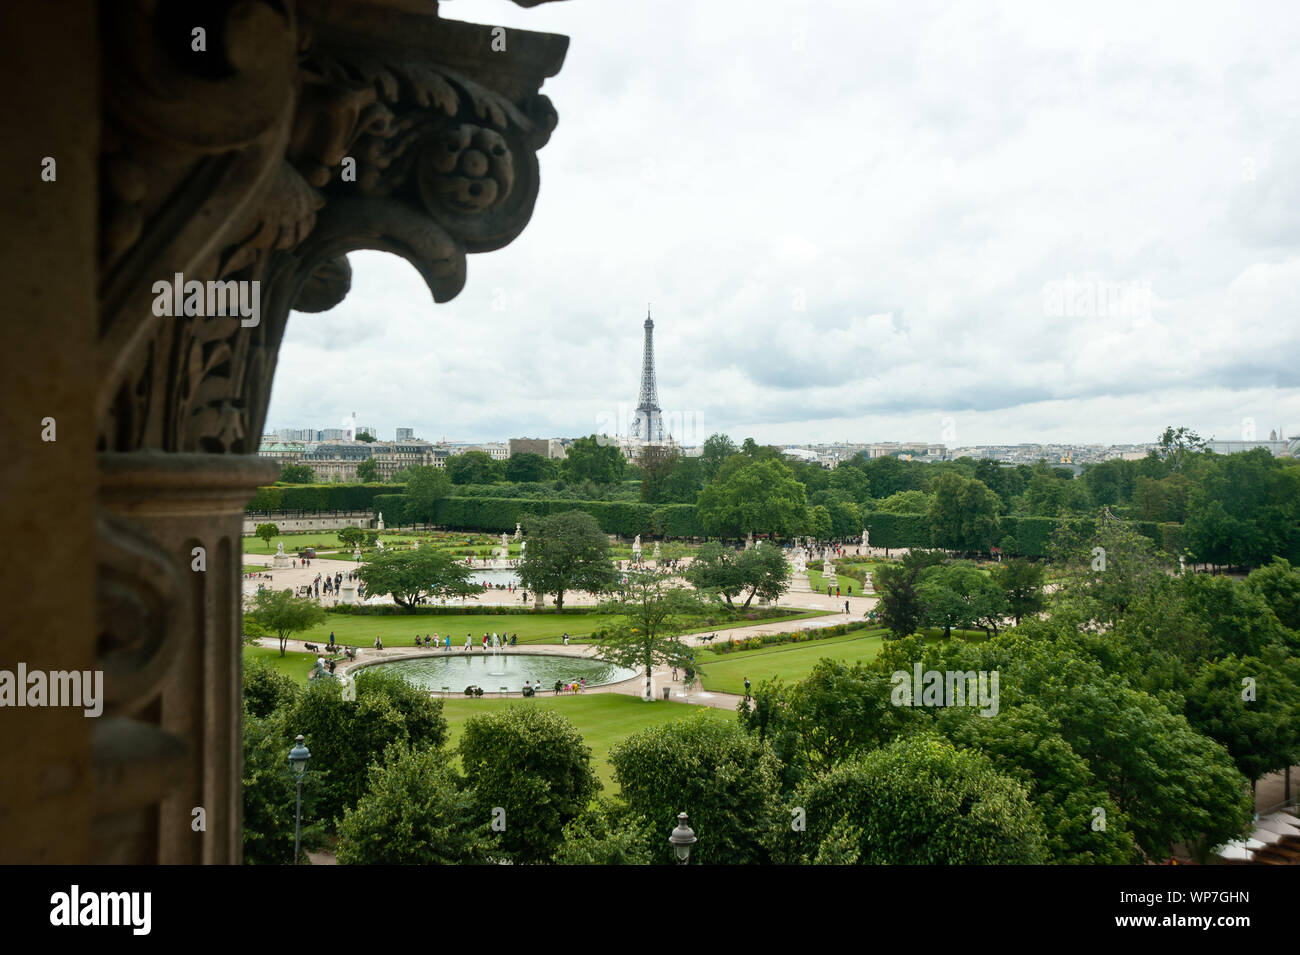 Der Jardin des Tuileries ist ein im Französischen Stil gehaltener Barock-Schlosspark ehemaliger beim Louvre à Paris. Die Parkanlage Erstreckt sich vo Banque D'Images